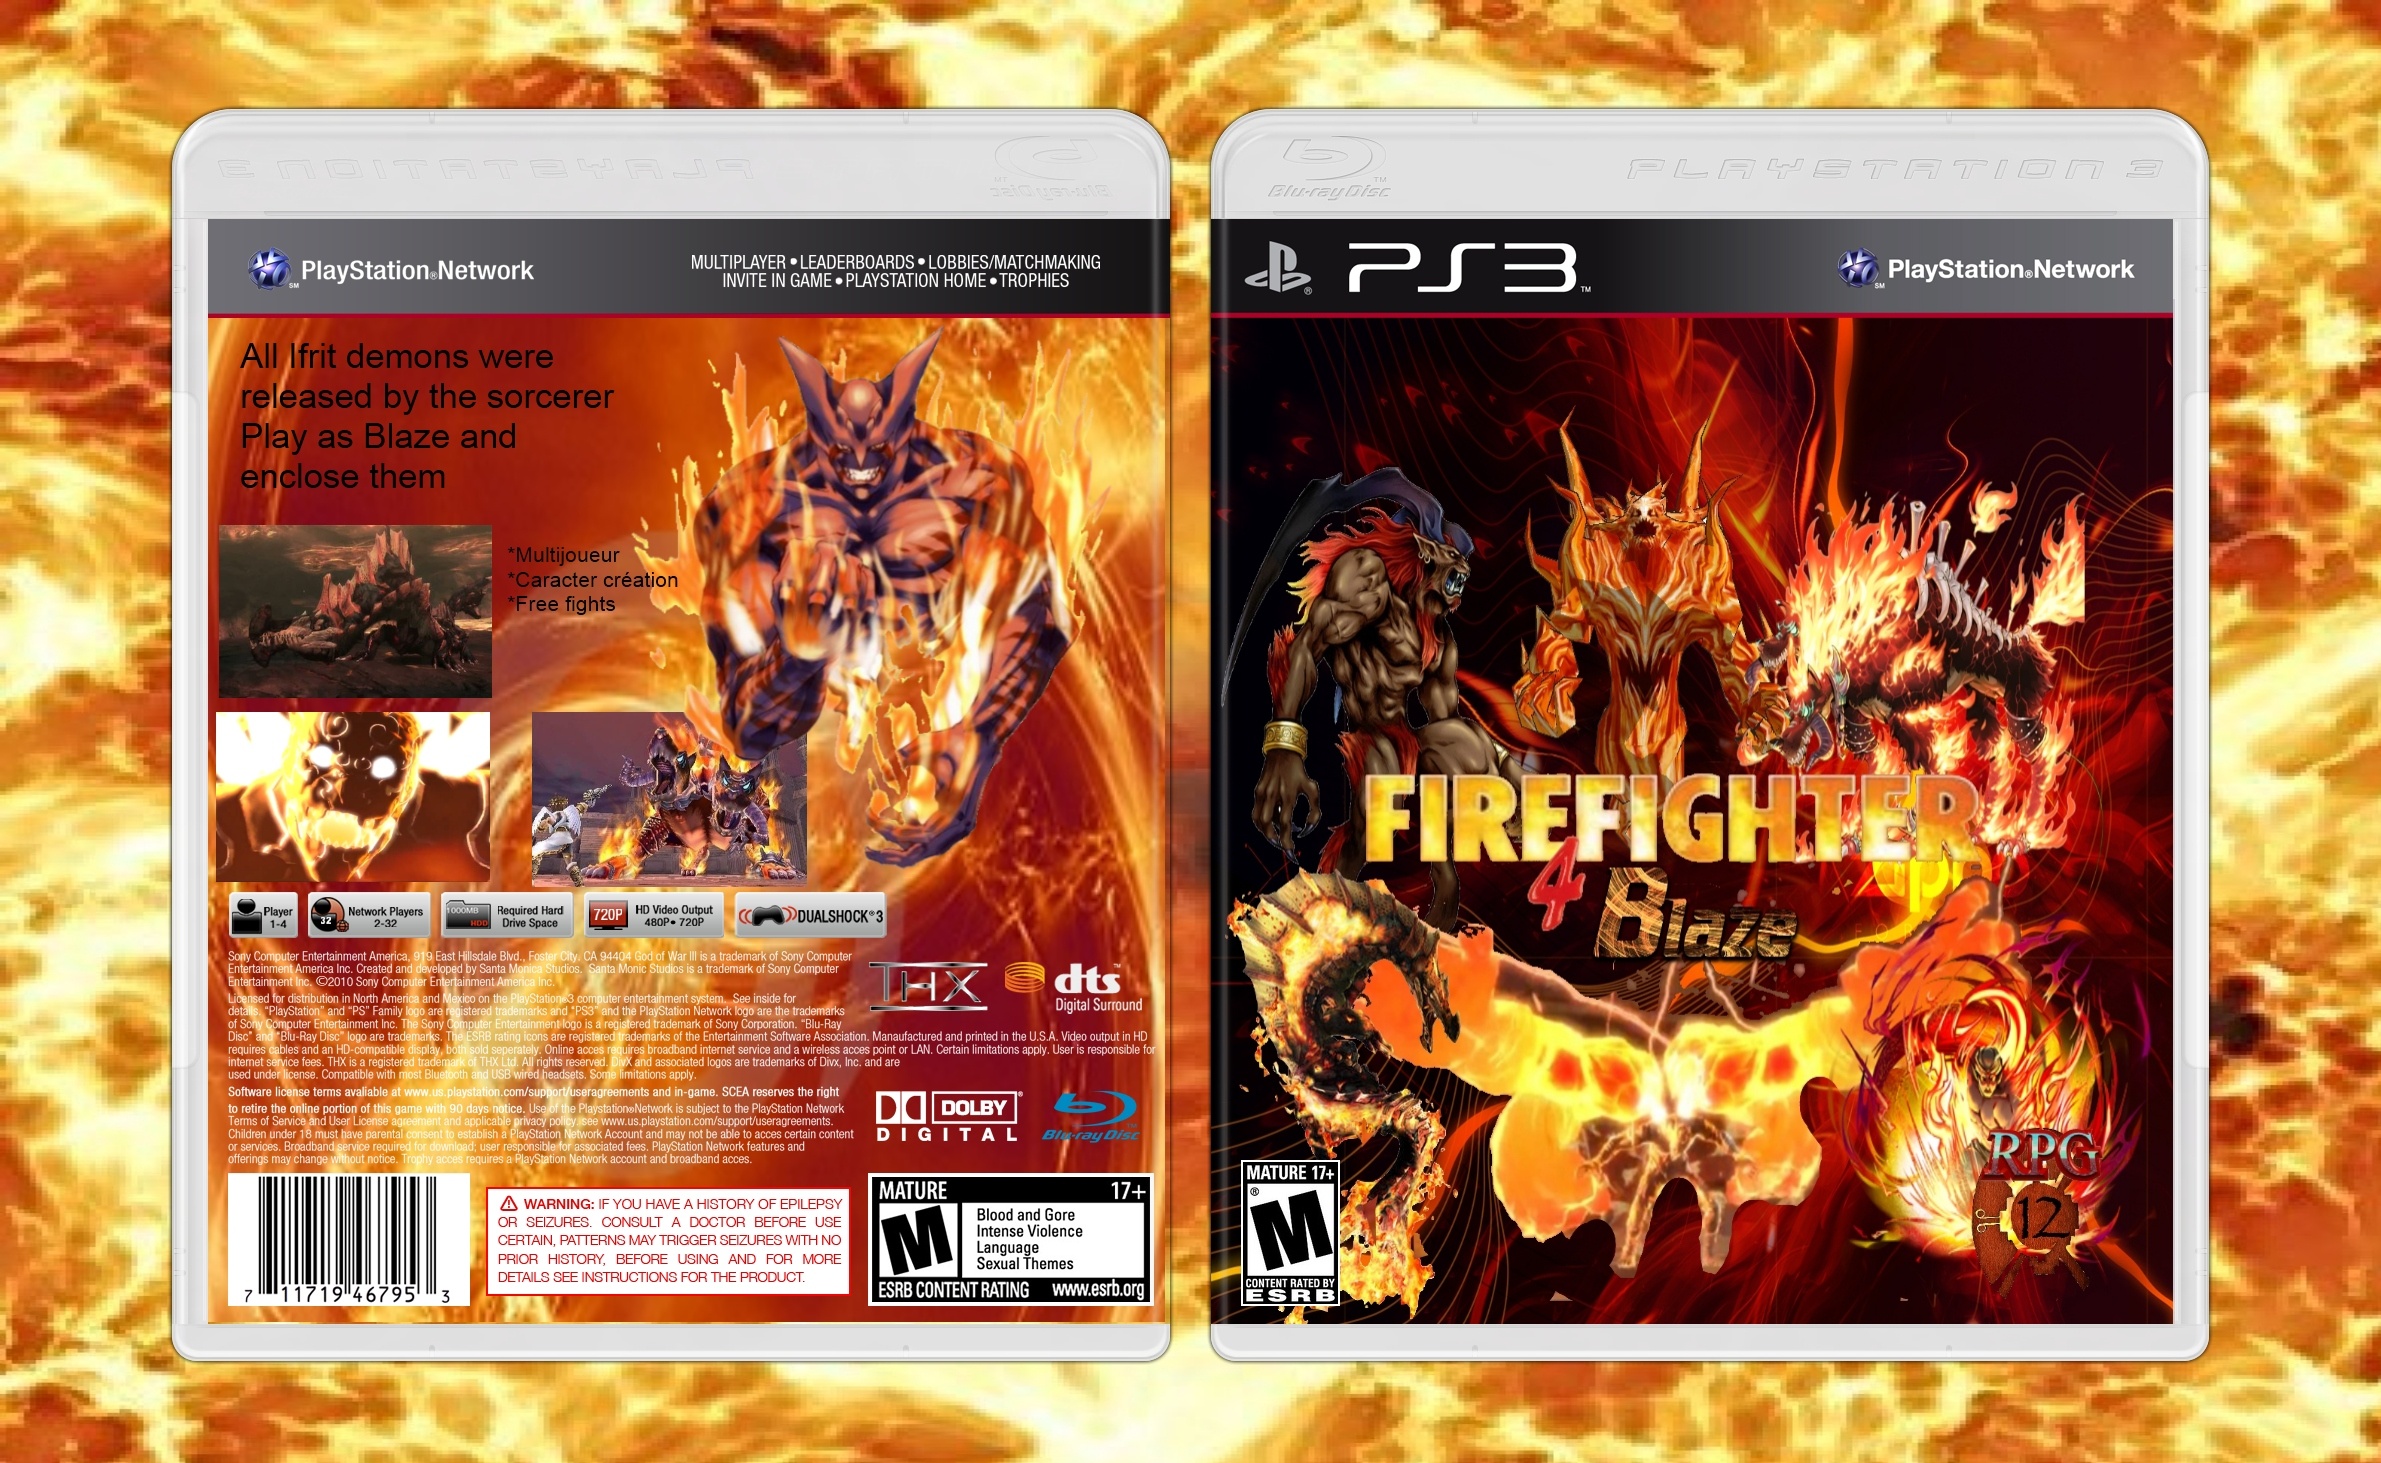 Fire Fighter 4: Blaze box cover